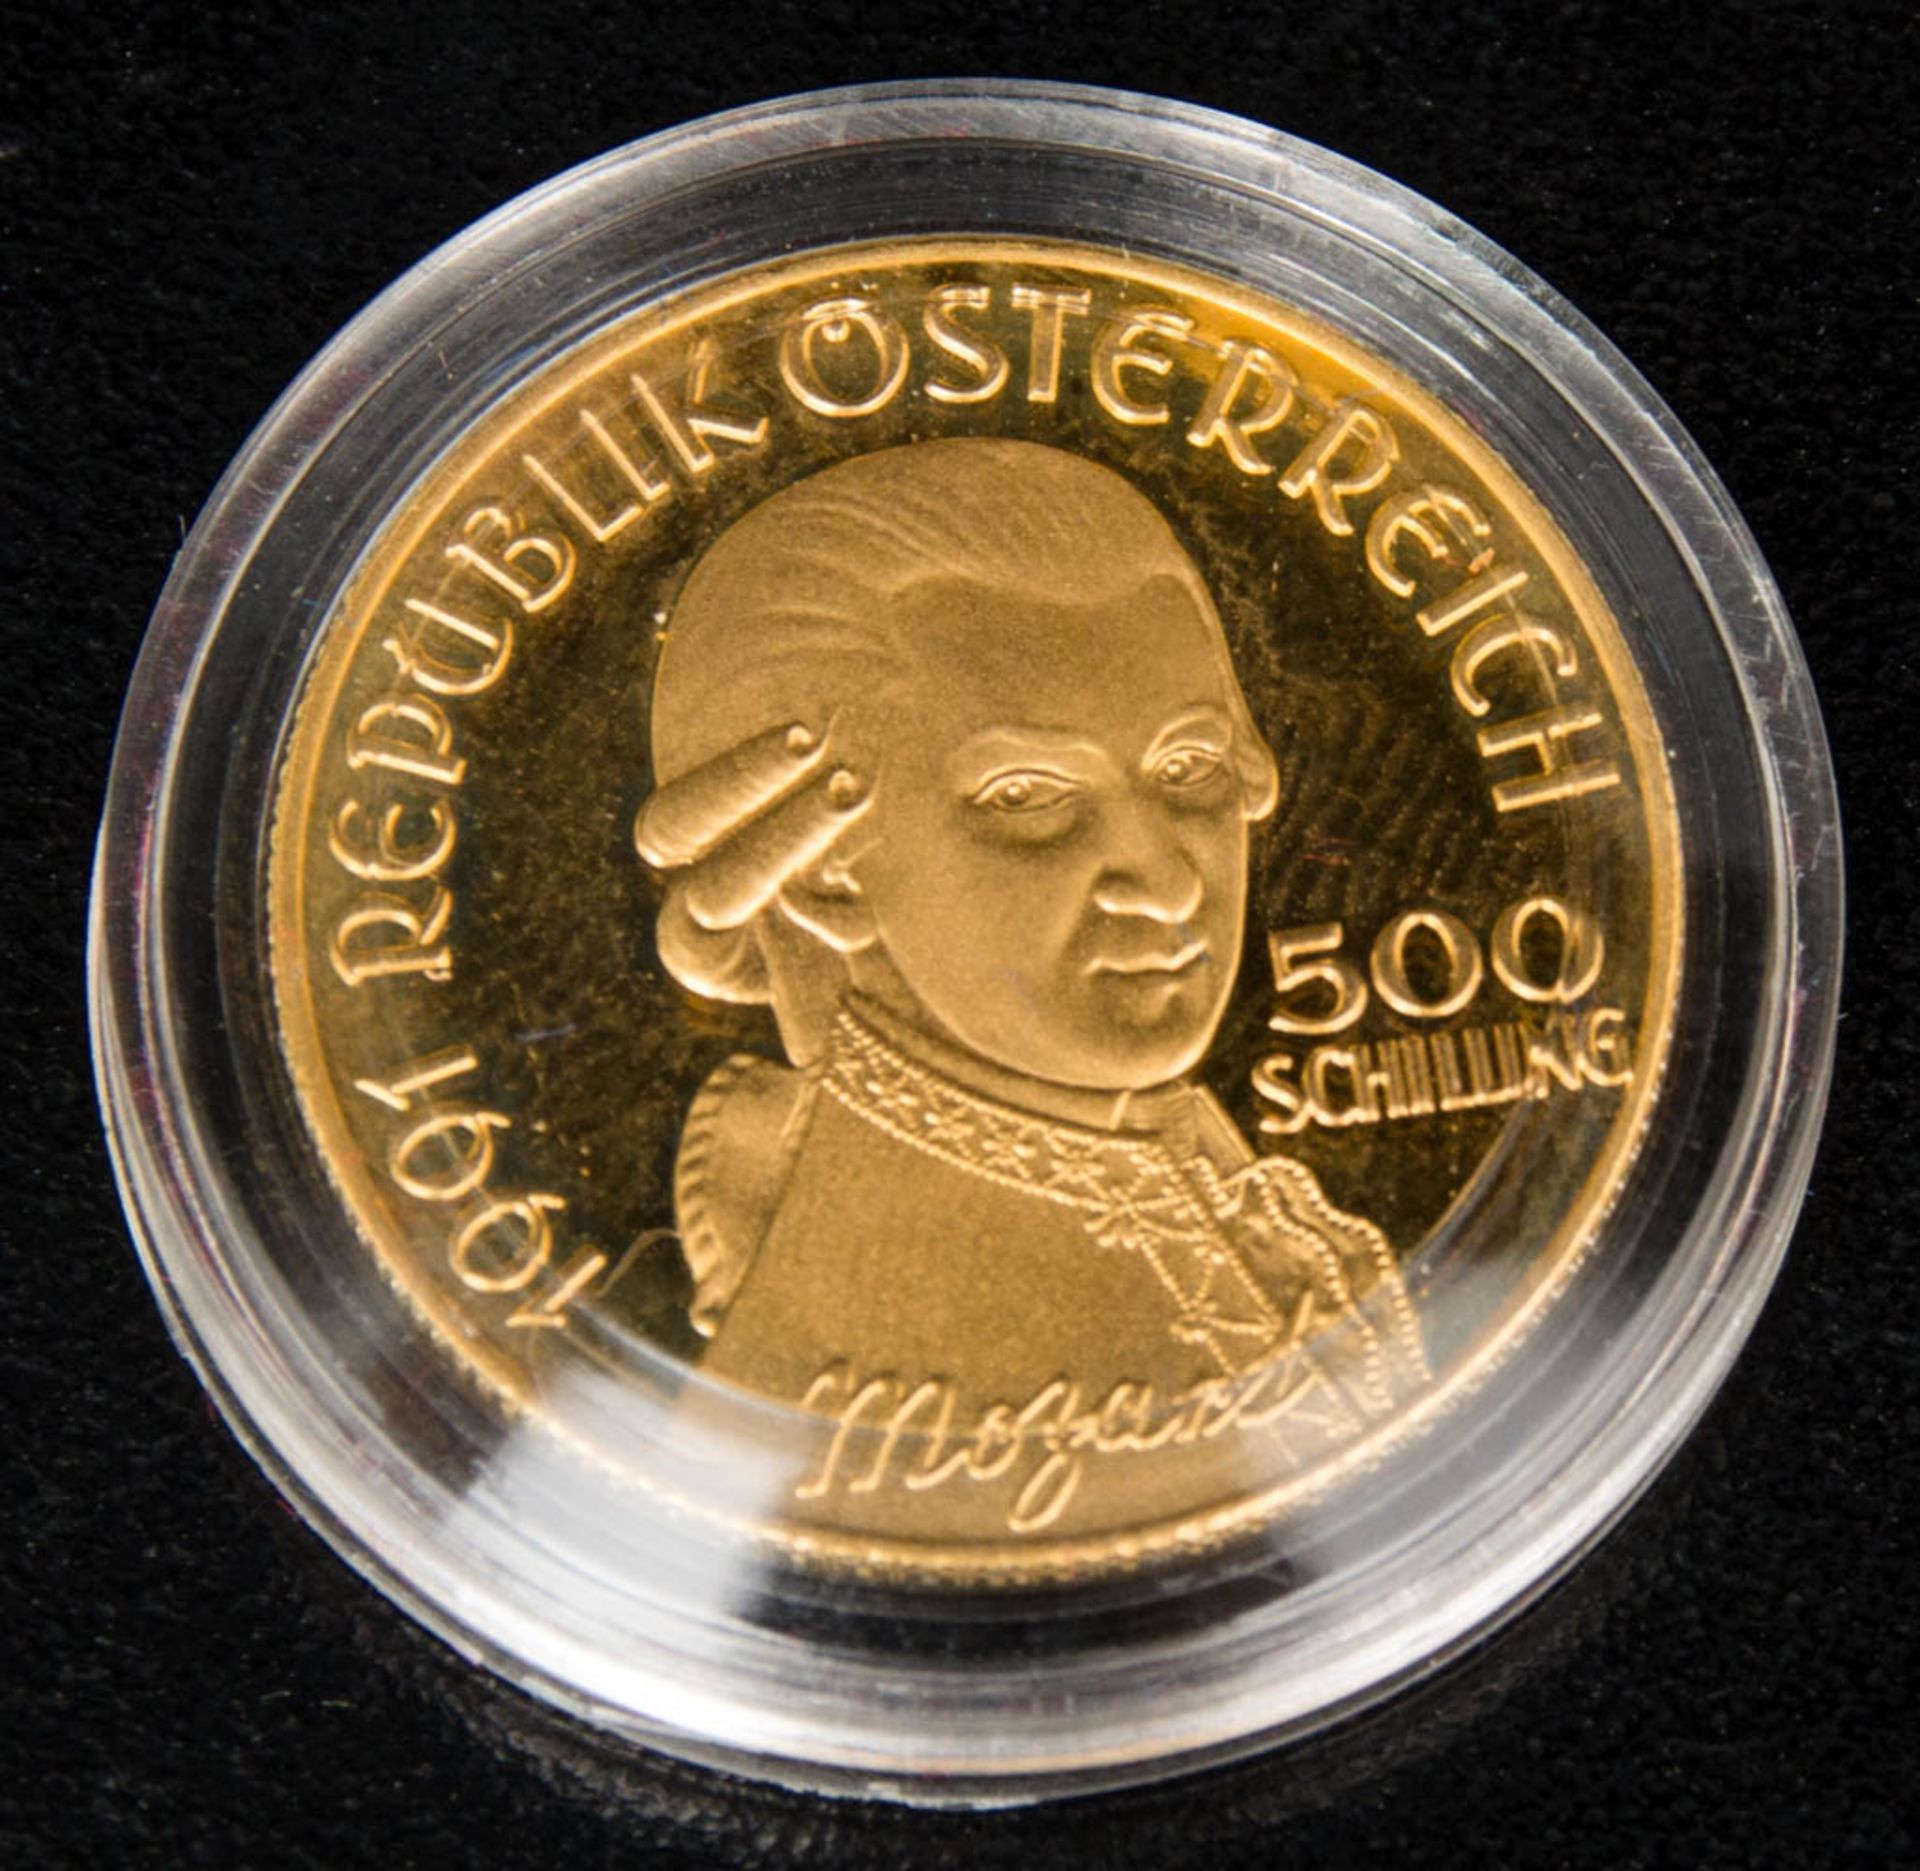 Mozart Gedenkmünze, 500 Schilling, Gold.986er Feingold.8 g. 22 mm Durchmesser.In Schatulle mit - Image 3 of 3